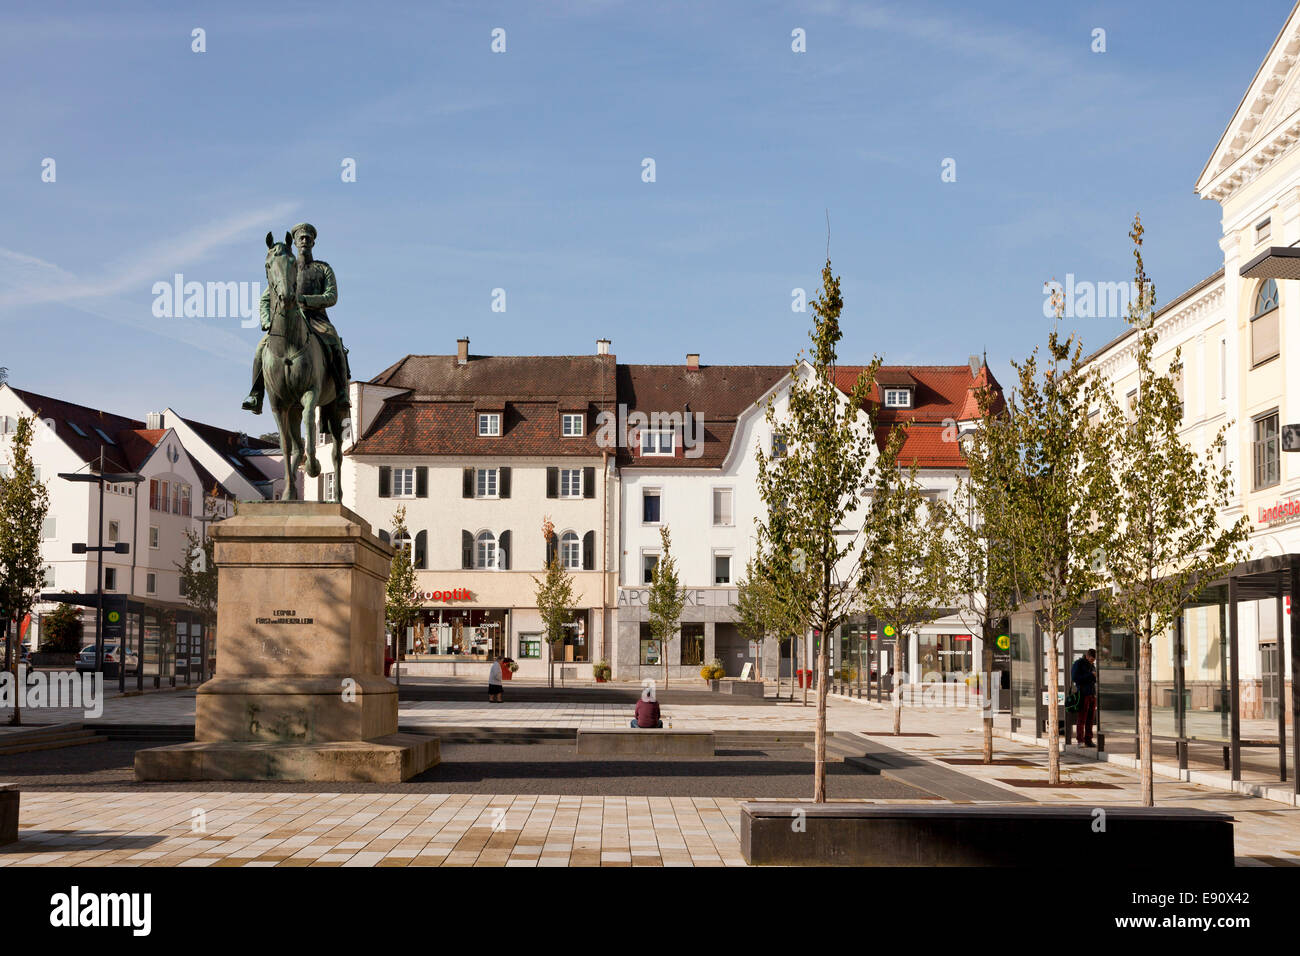 Statua equestre di Leopold von Hohenzollern sulla piazza Leopoldo in Sigmaringen, Baden-Württemberg, Germania Foto Stock